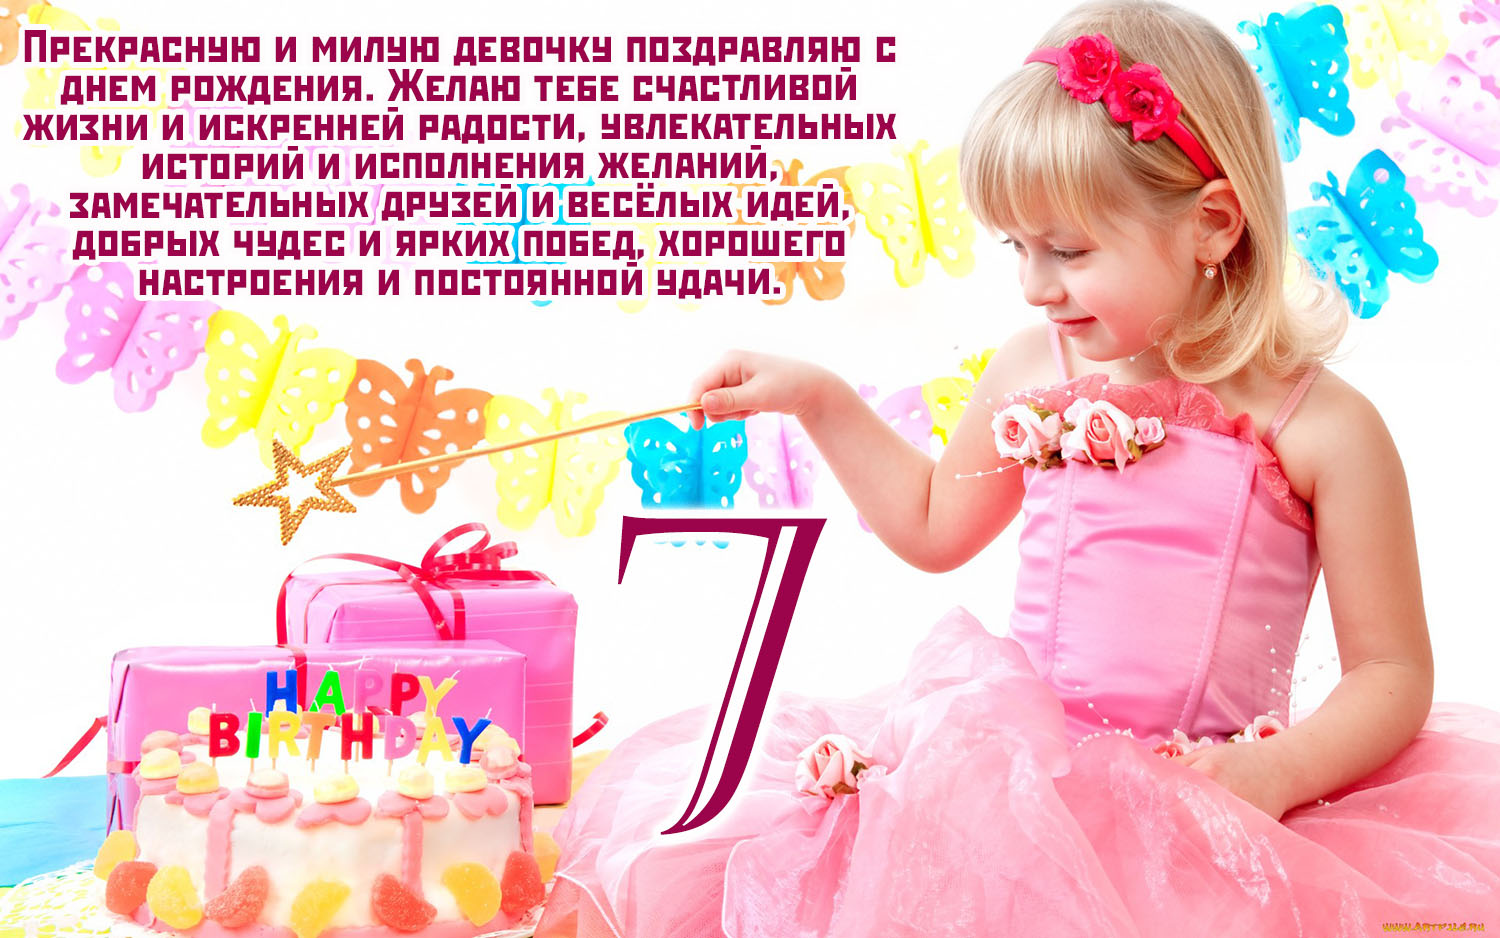 Поздравление на день рождения 7 лет девочке, мальчику в прозе